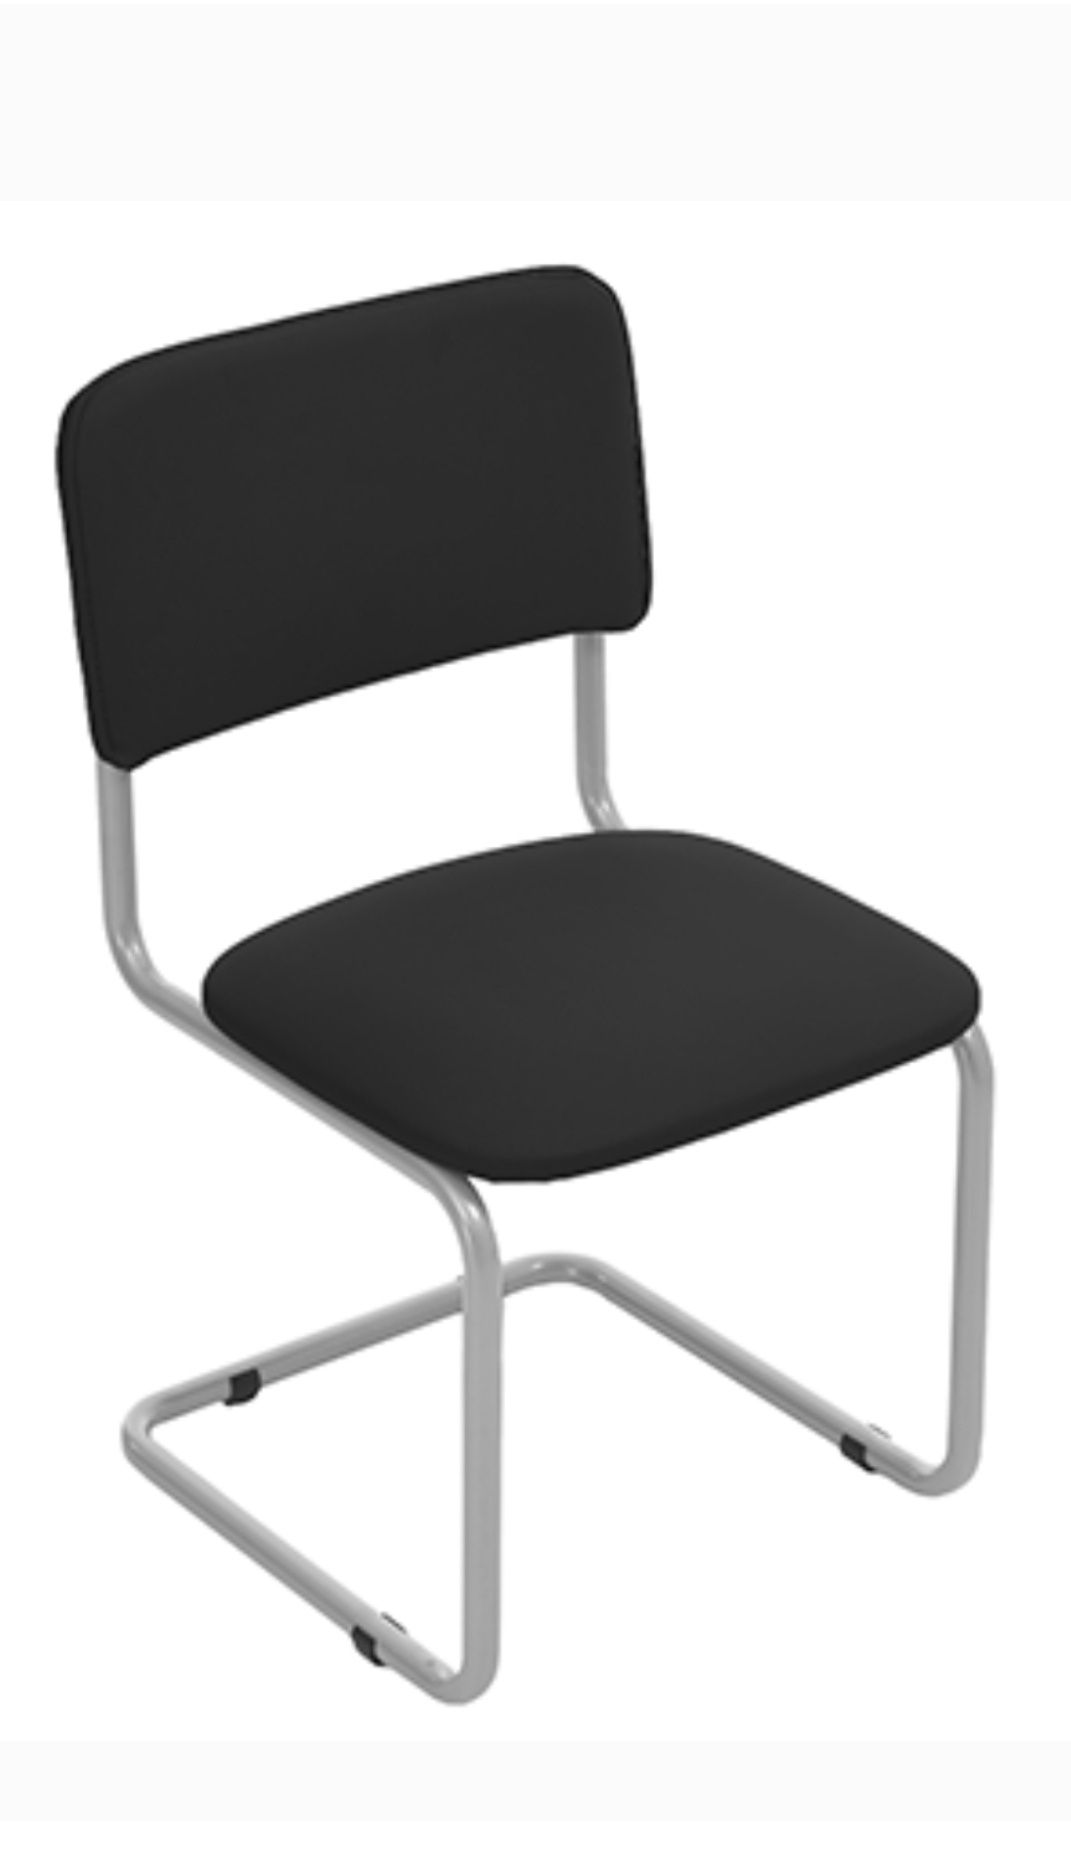 Офисный стулья Нолан оптовая цена